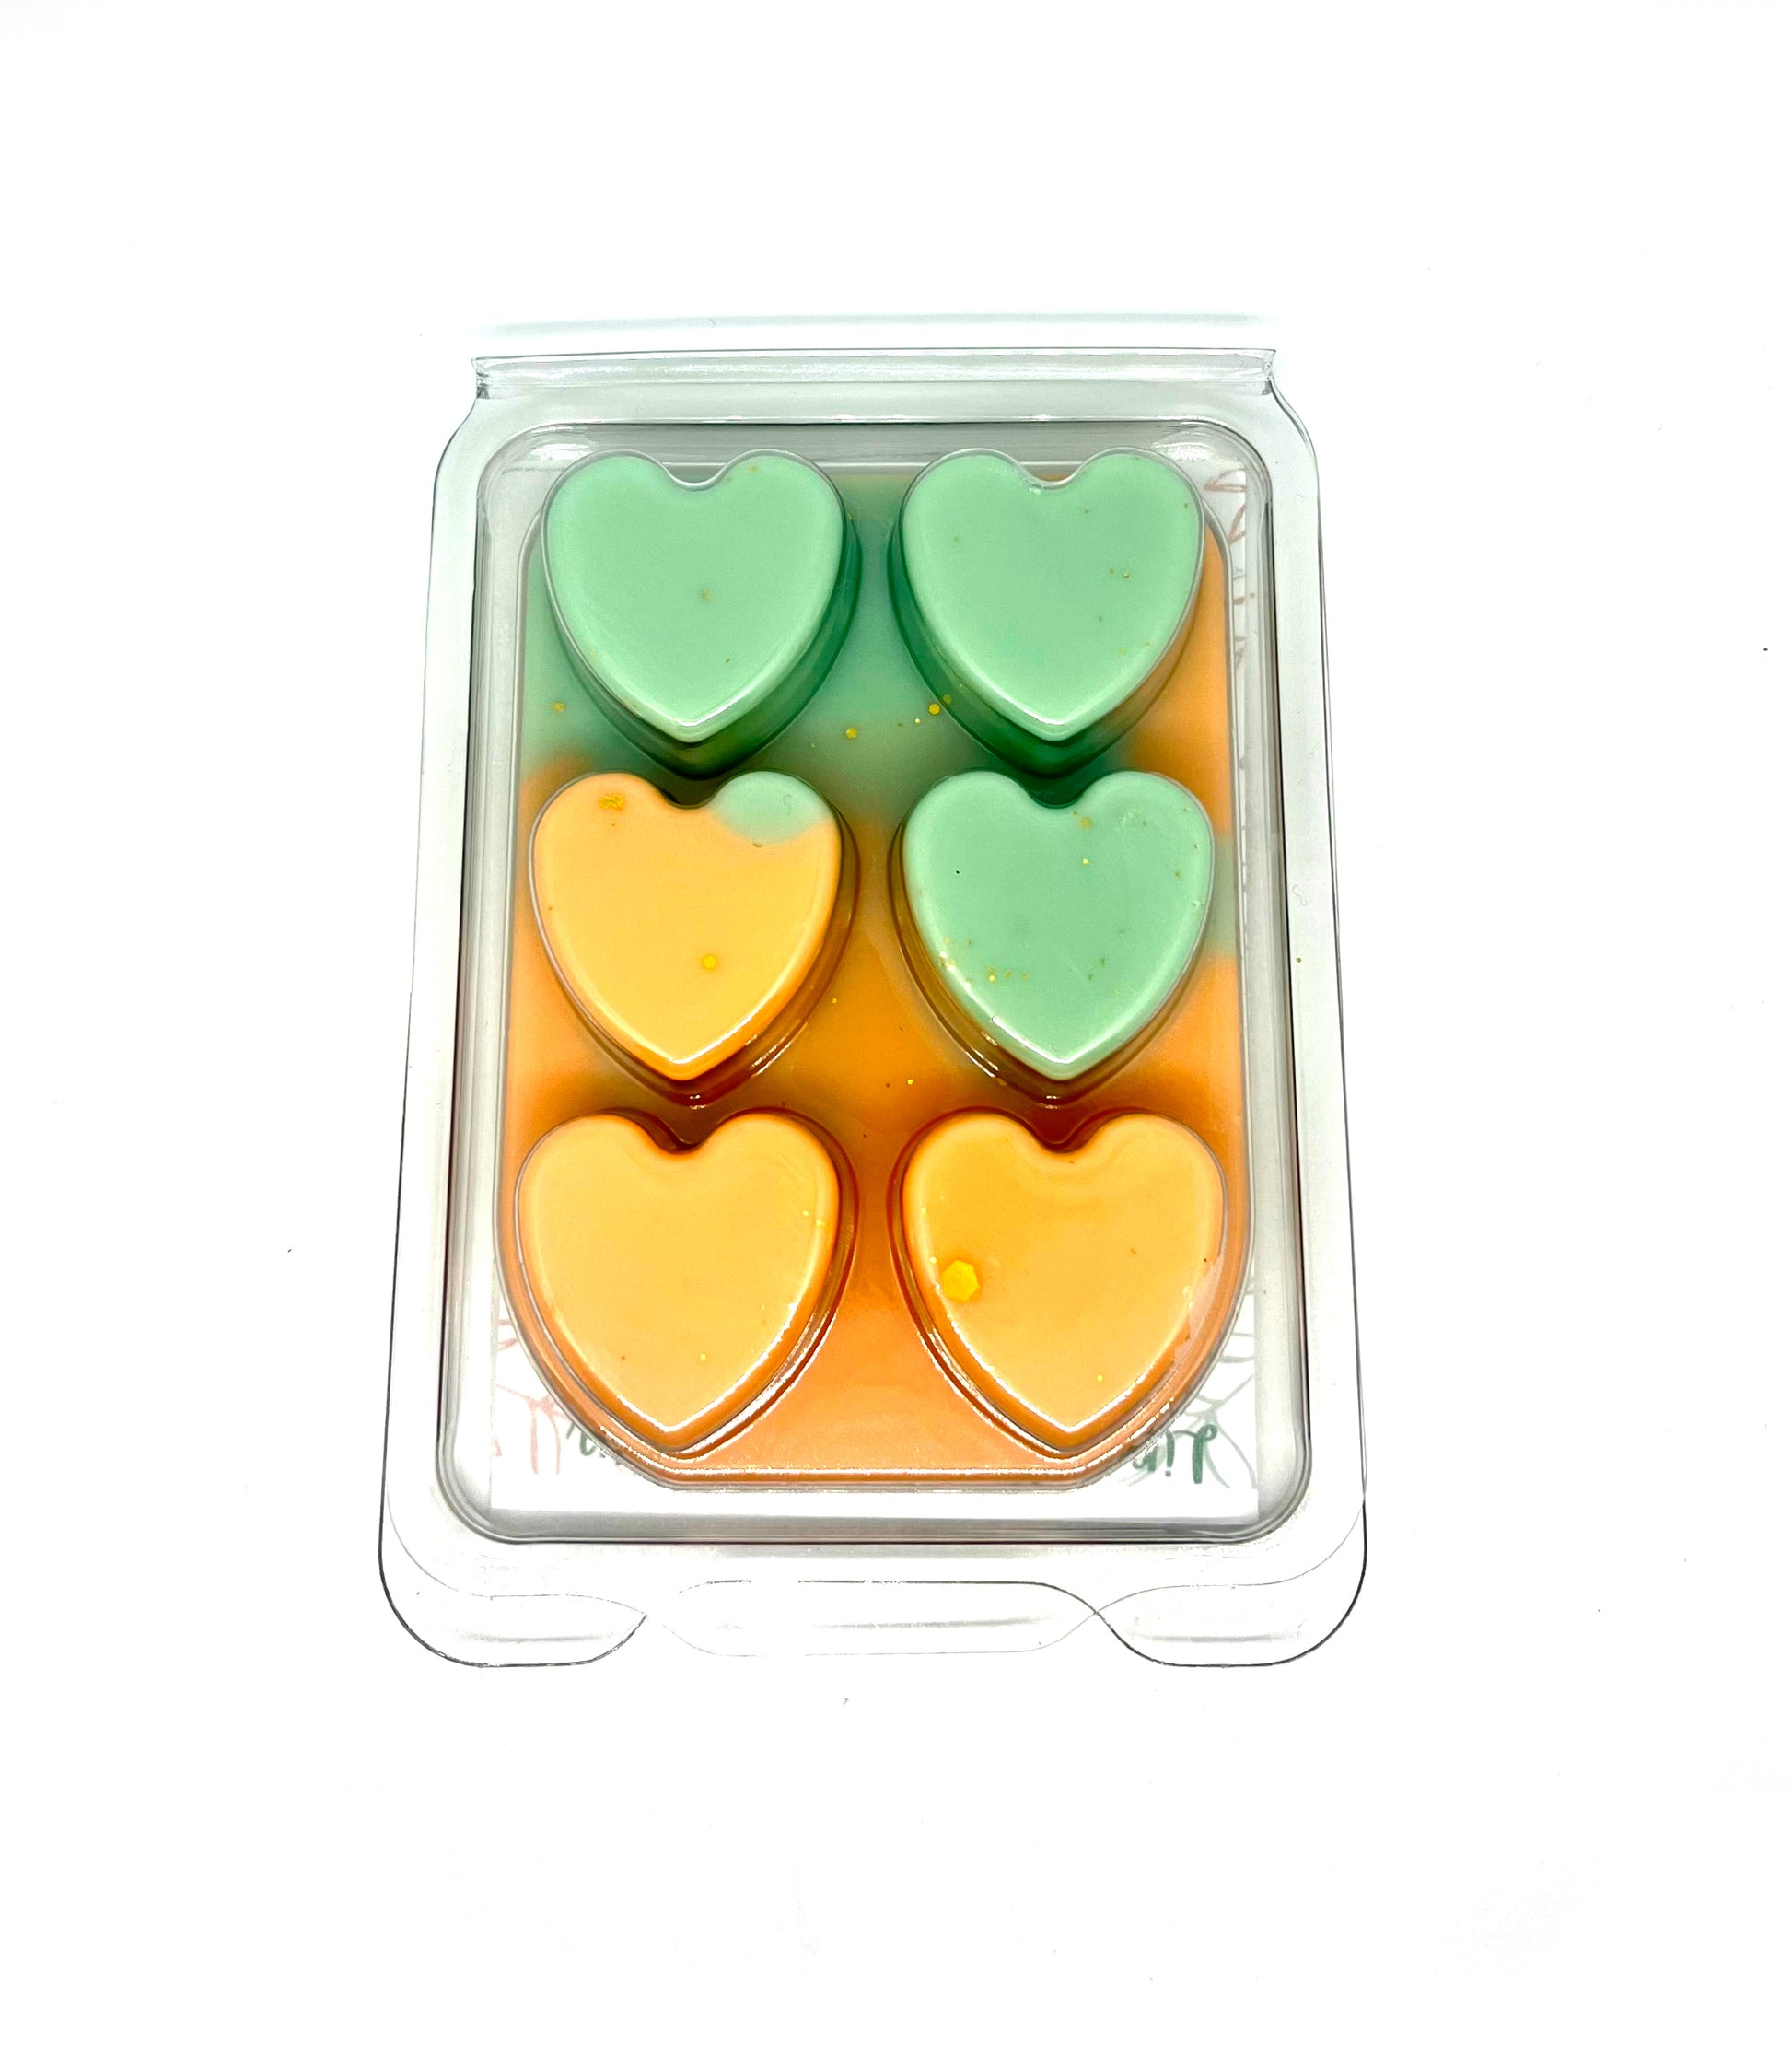 Lime Basil Mandarin JM Inspired Heart Clamshell Wax Melts - ScentiMelti  Lime Basil Mandarin JM Inspired Heart Clamshell Wax Melts